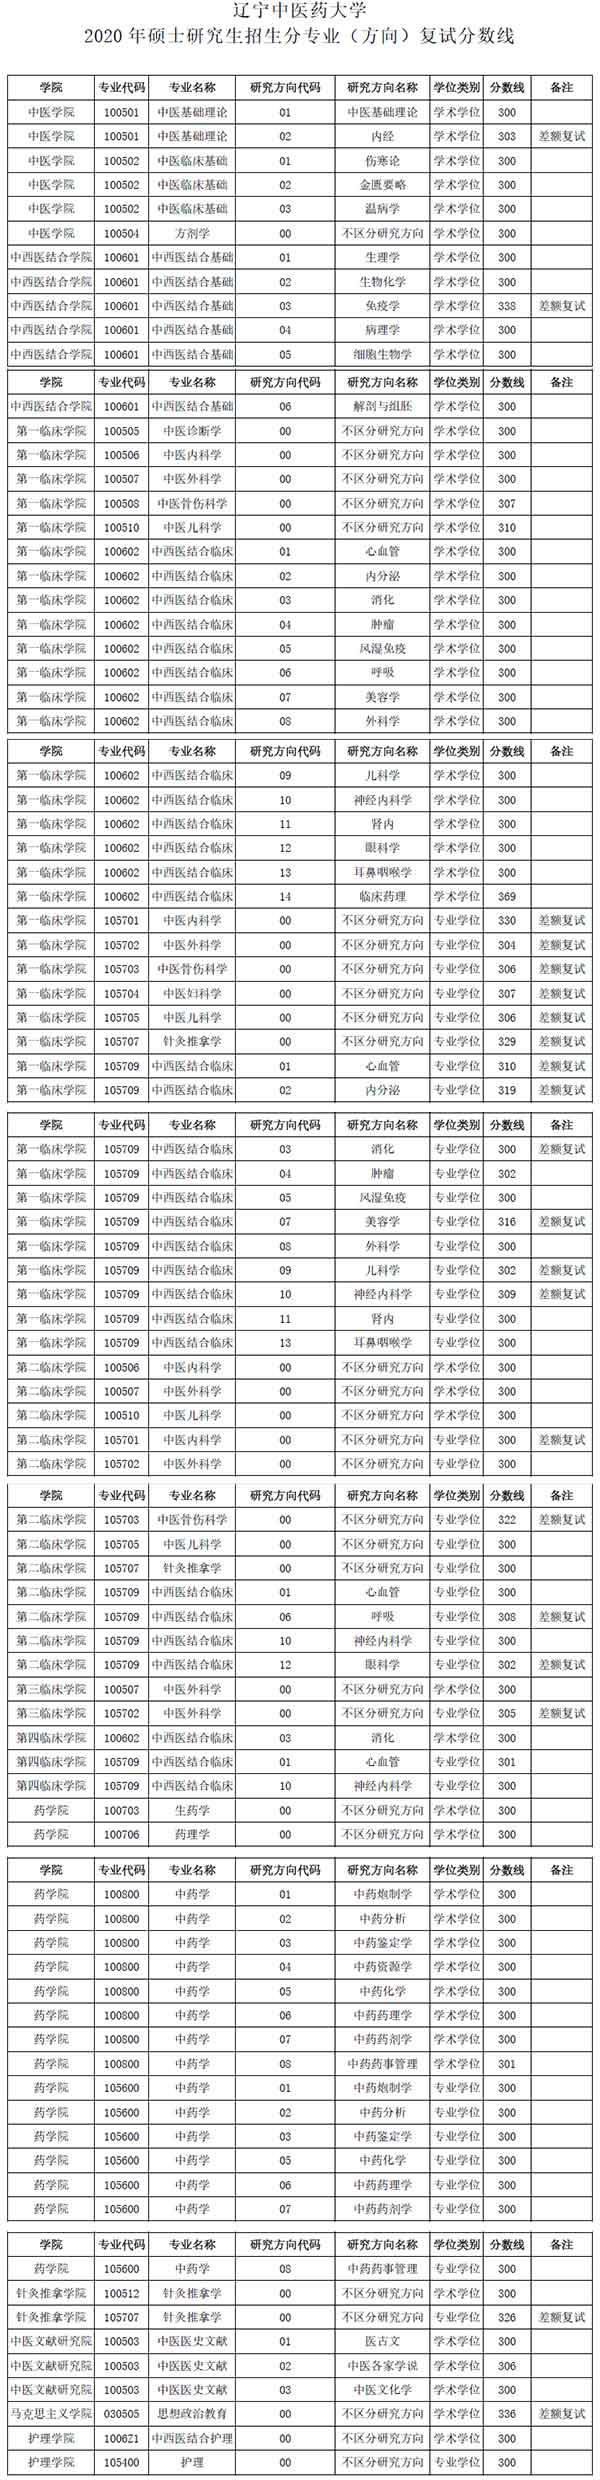 辽宁中医药大学2020考研复试分数线.jpg